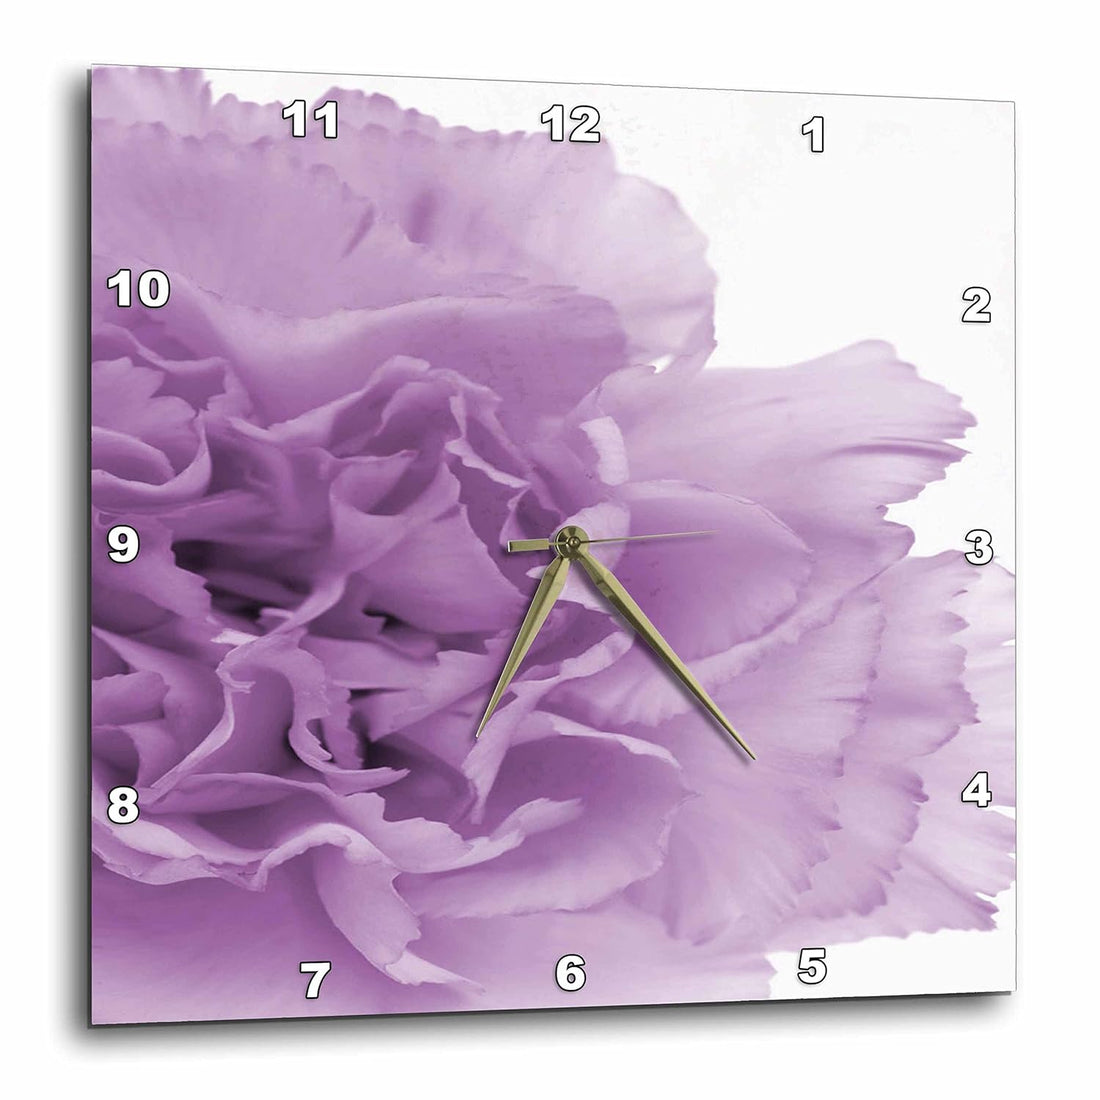 3dRose Delicate Purple Grey Flower - Wall Clock, 10 by 10-Inch (dpp_20615_1)